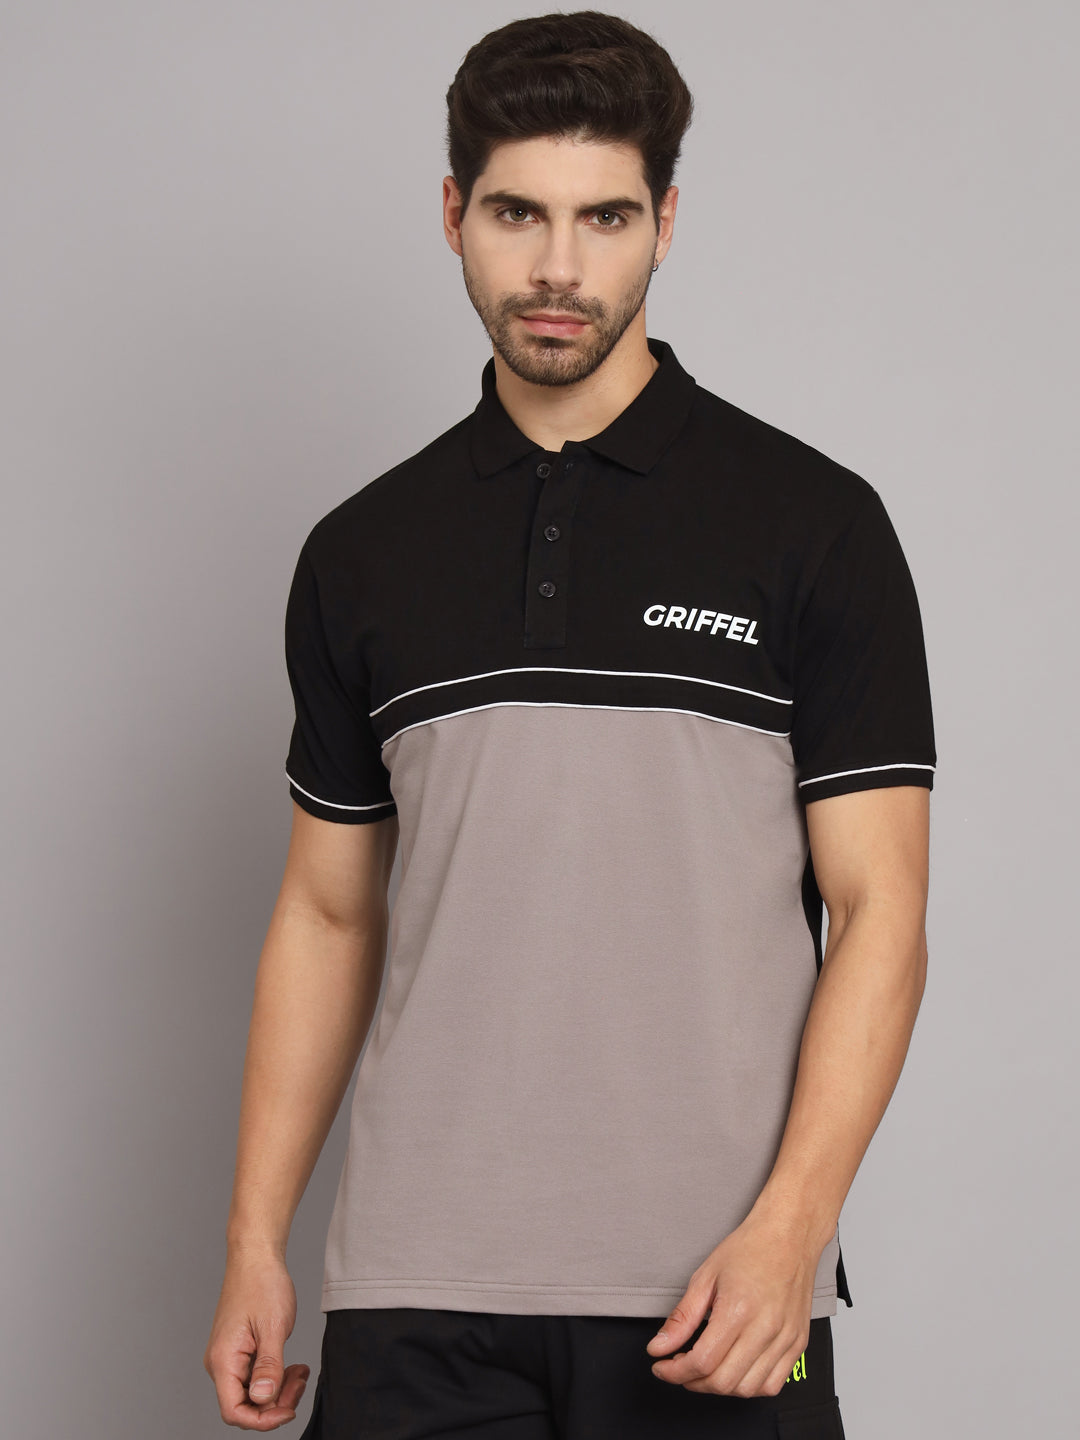 GRIFFEL Men's Beige Cotton Polo T-shirt - griffel